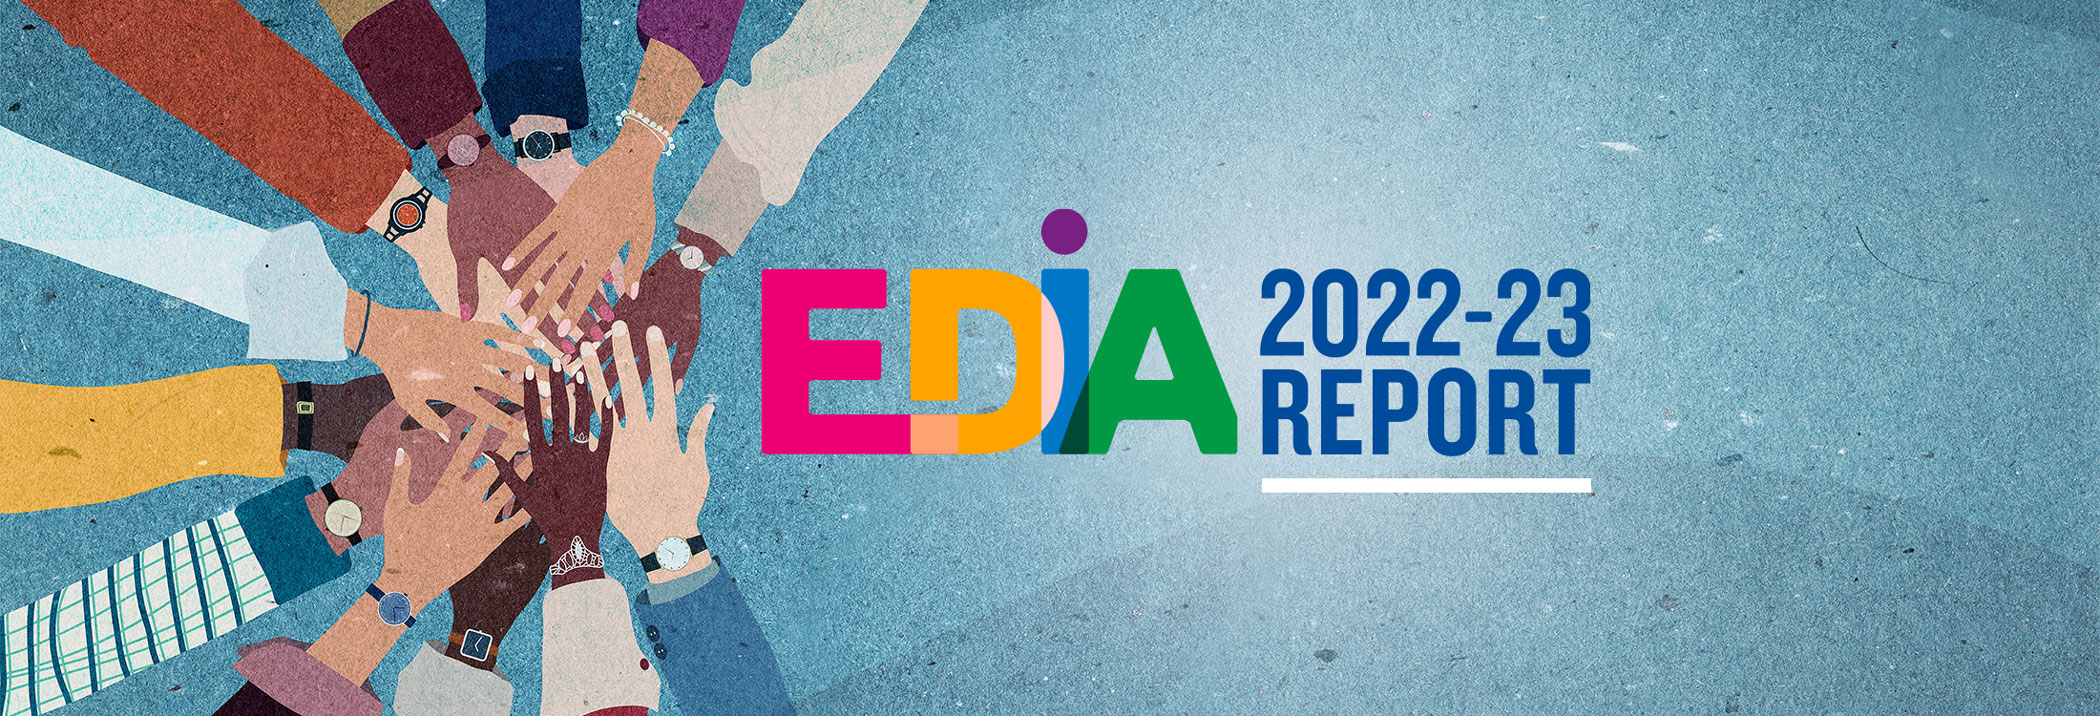 EDIA Report 2022-2023